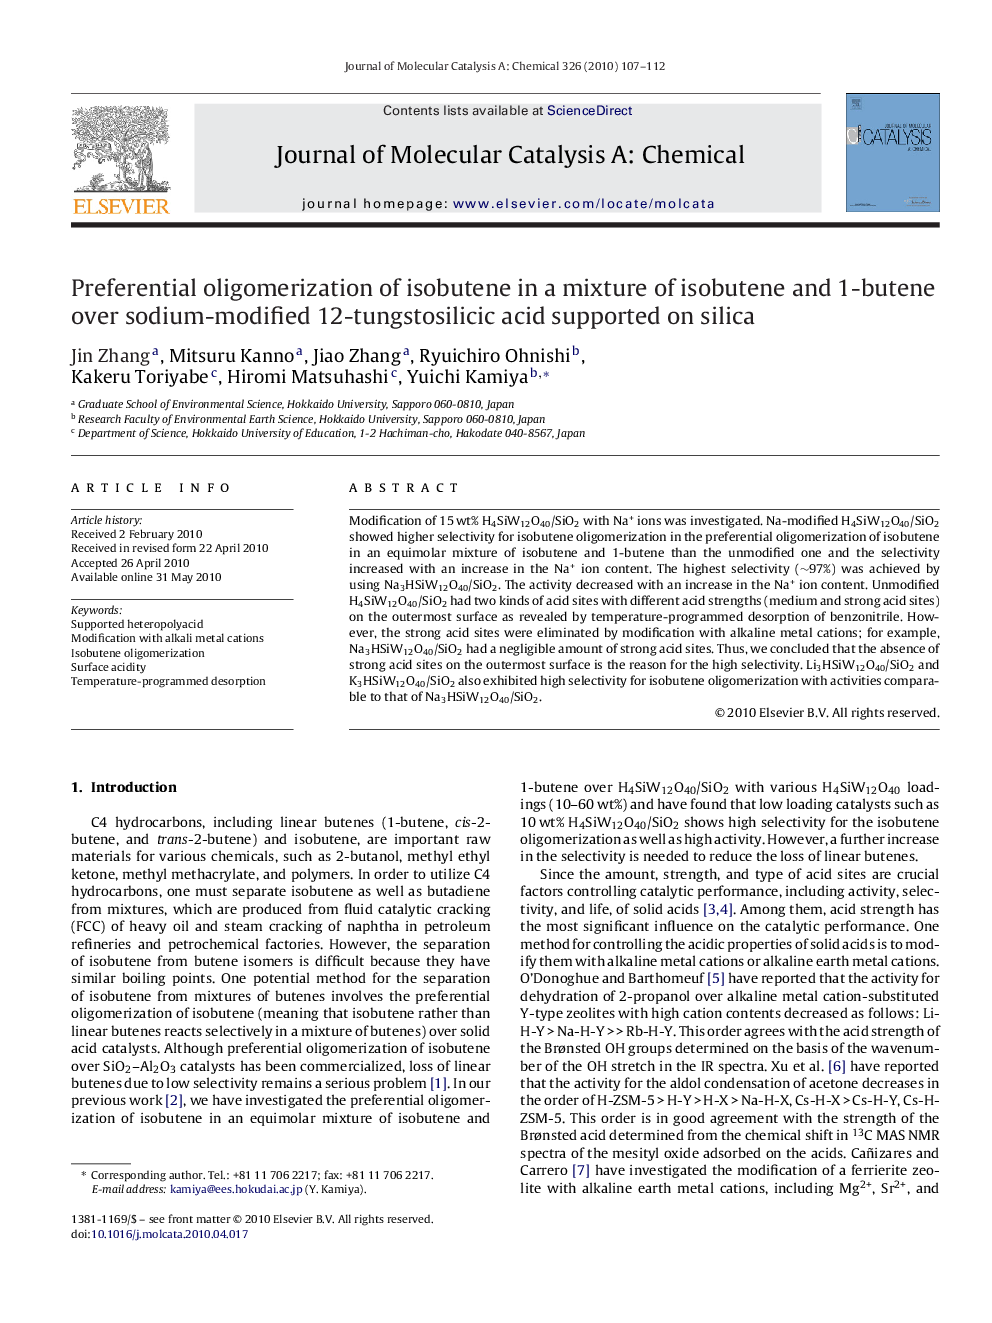 Preferential oligomerization of isobutene in a mixture of isobutene and 1-butene over sodium-modified 12-tungstosilicic acid supported on silica